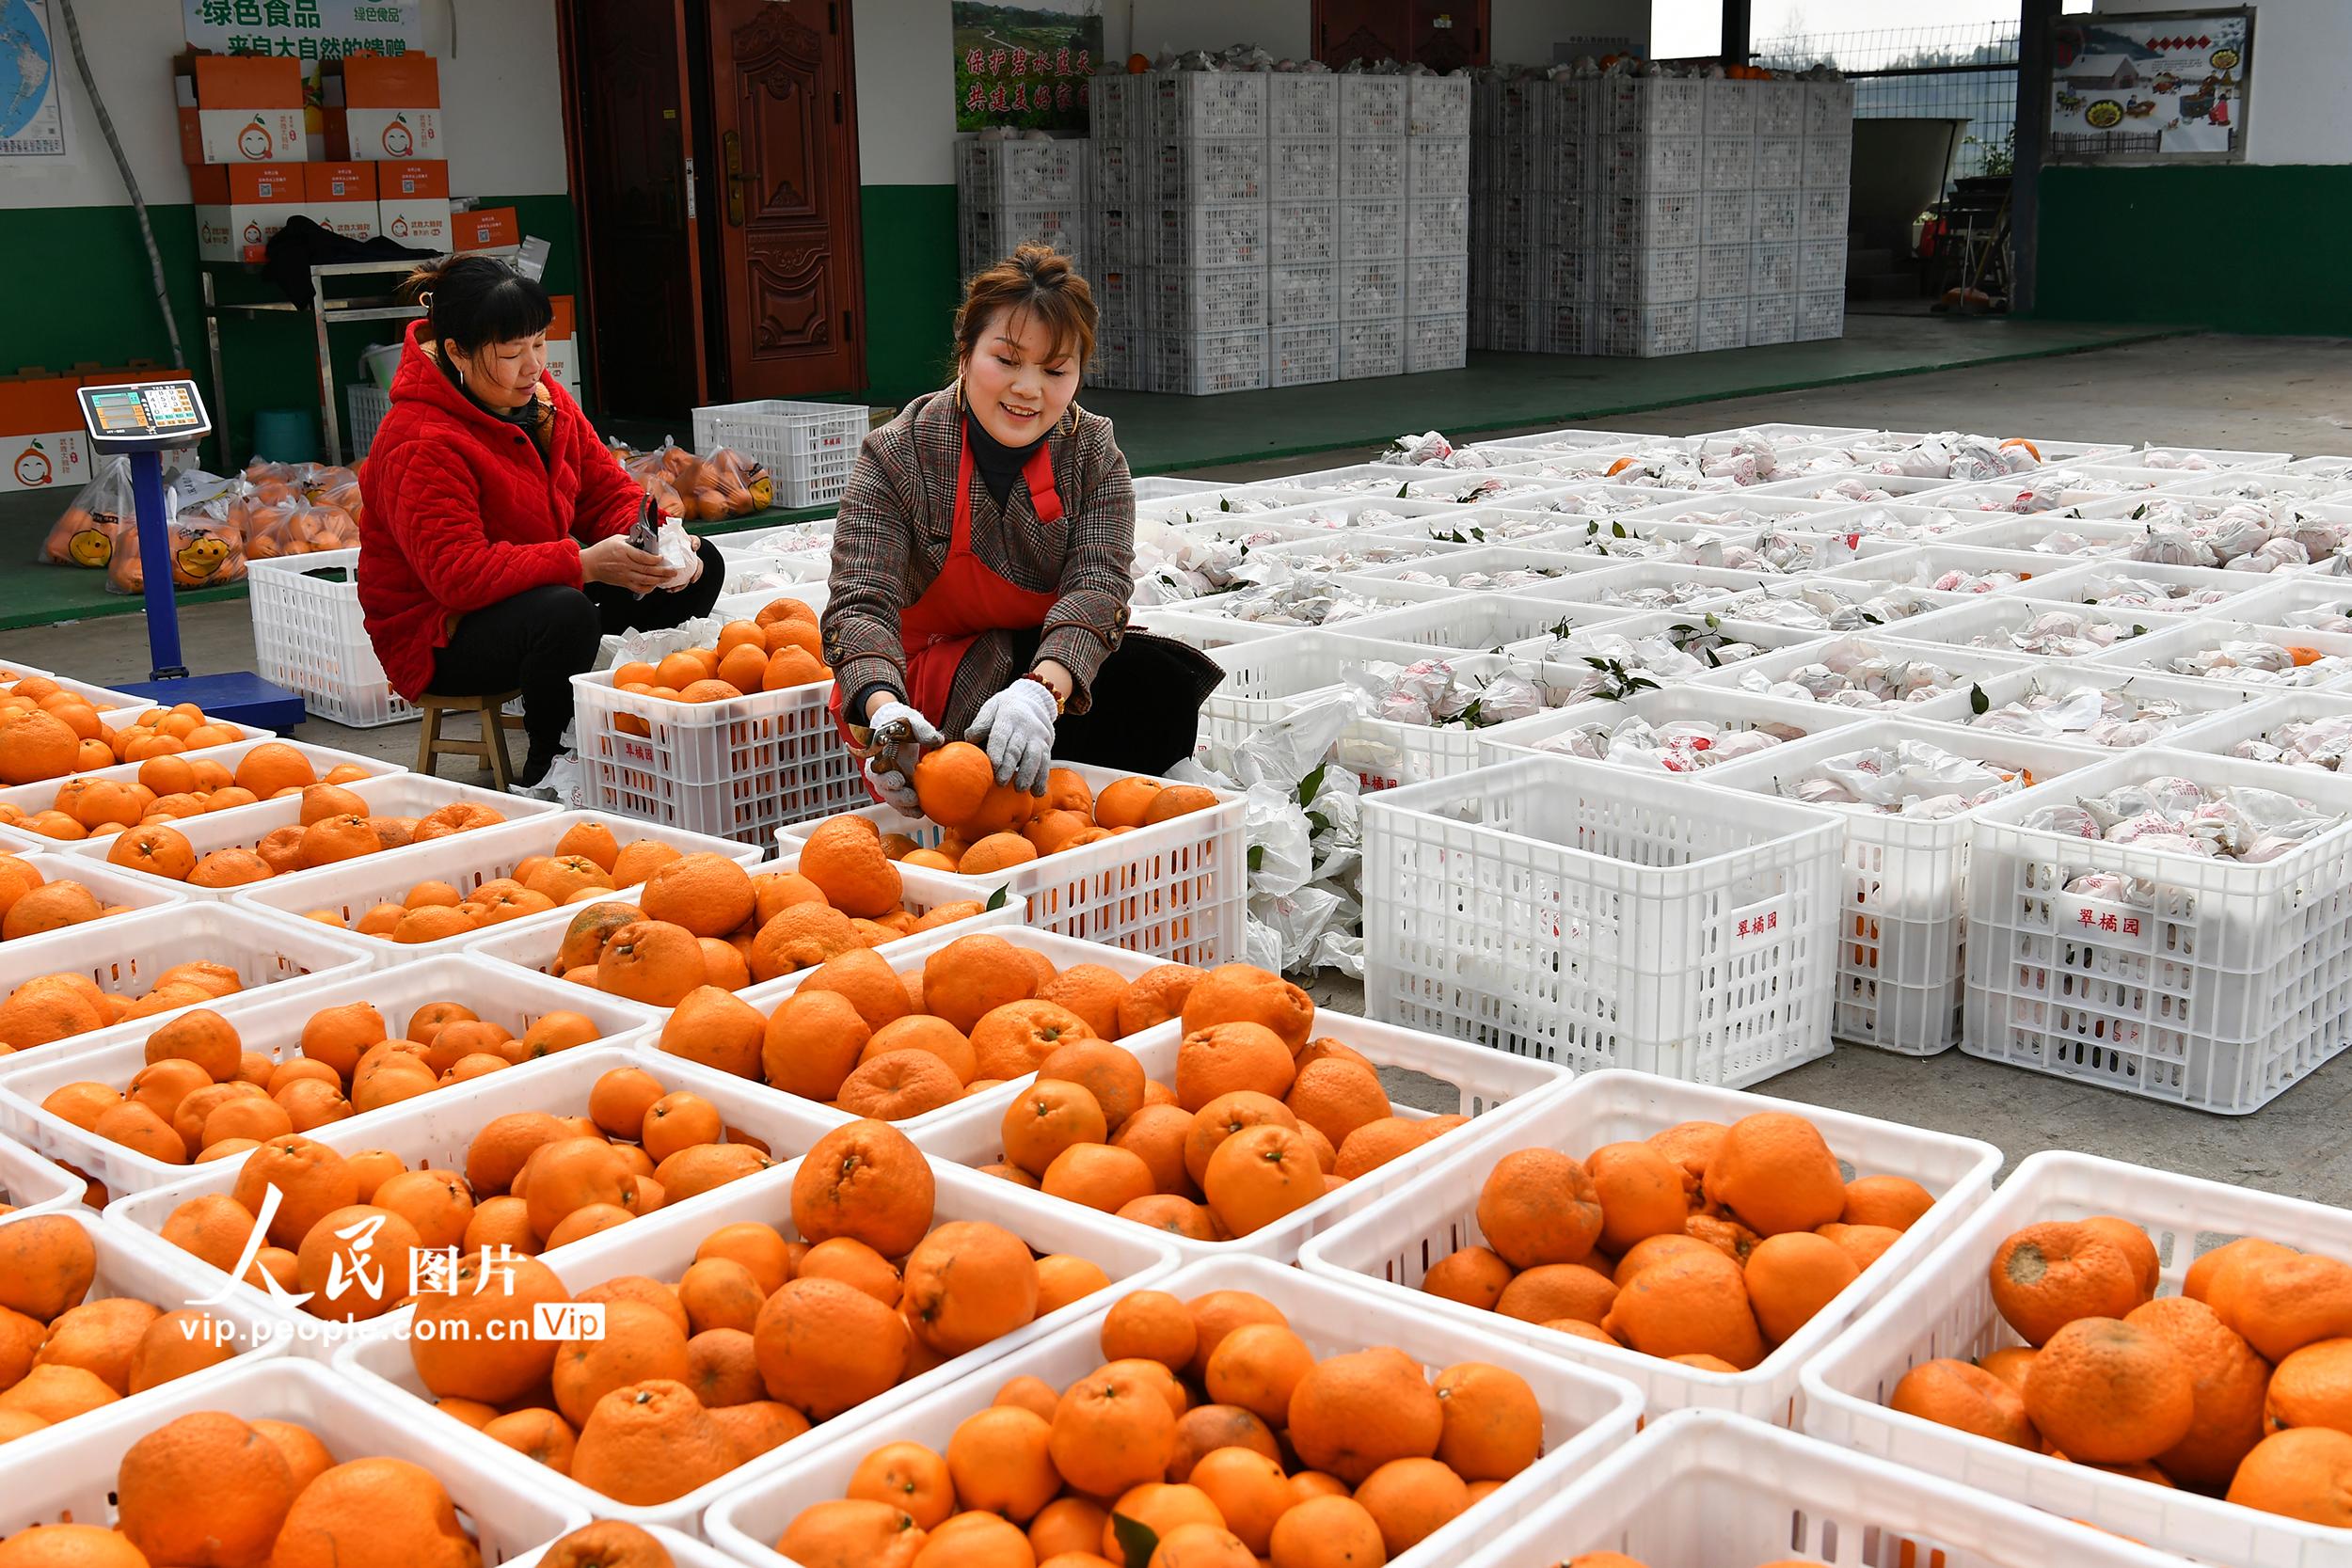 2022年2月25日，四川省廣安市武勝縣鳴鐘鎮龍廟村村民在加工車間對採摘的柑橘進行清洗、分級。